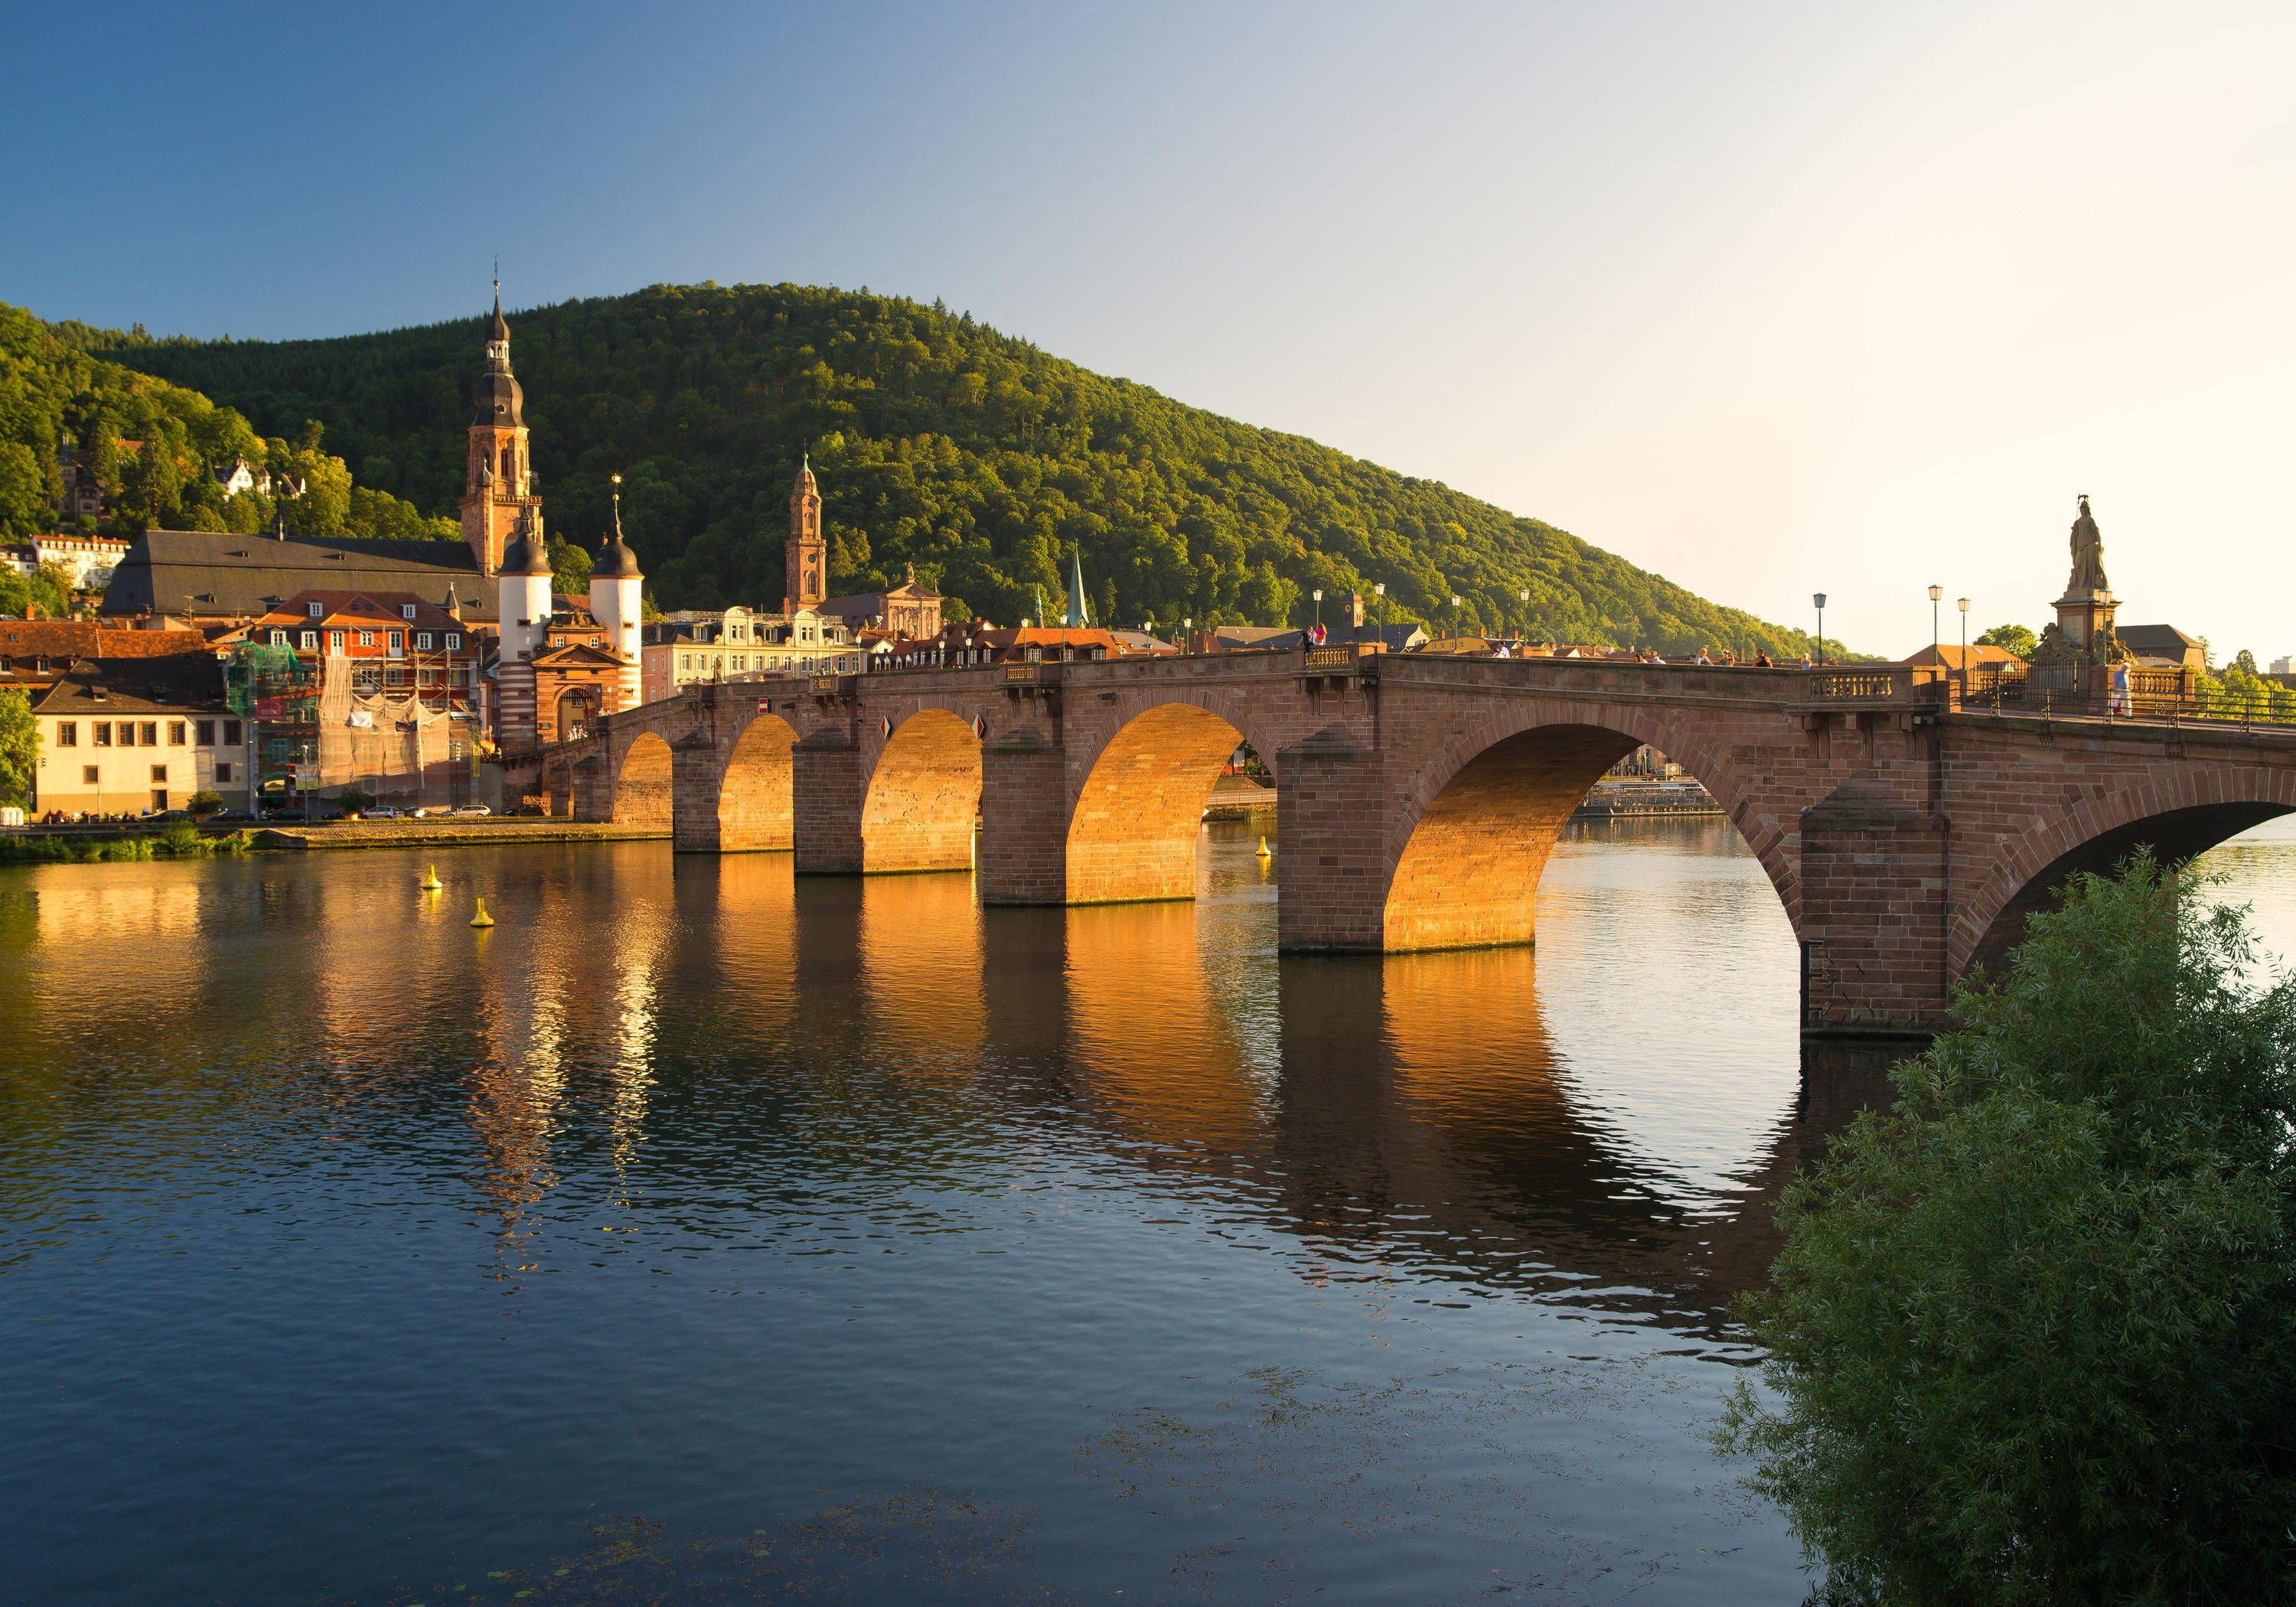 wandmotiv24 Fototapete Alte Brücke Heidelberg, glatt, Wandtapete, Motivtapete, matt, Vliestapete